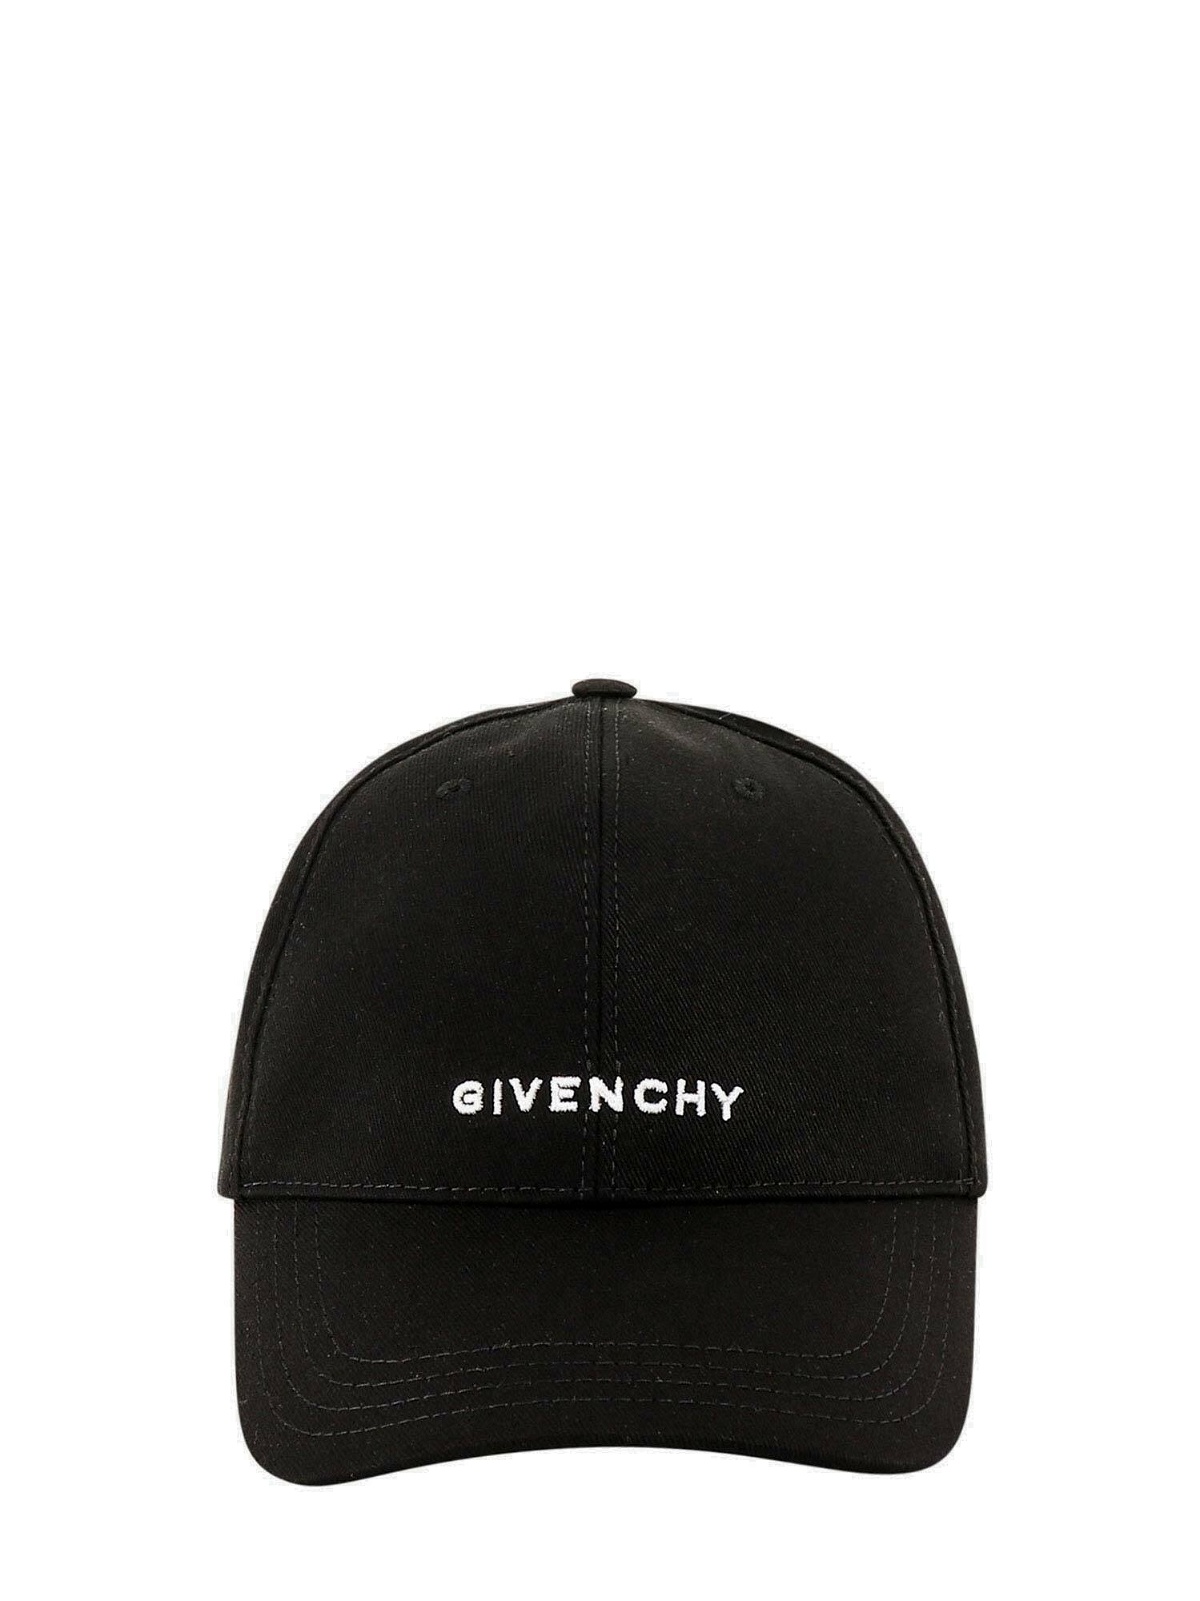 Givenchy Hat Black Mens Givenchy